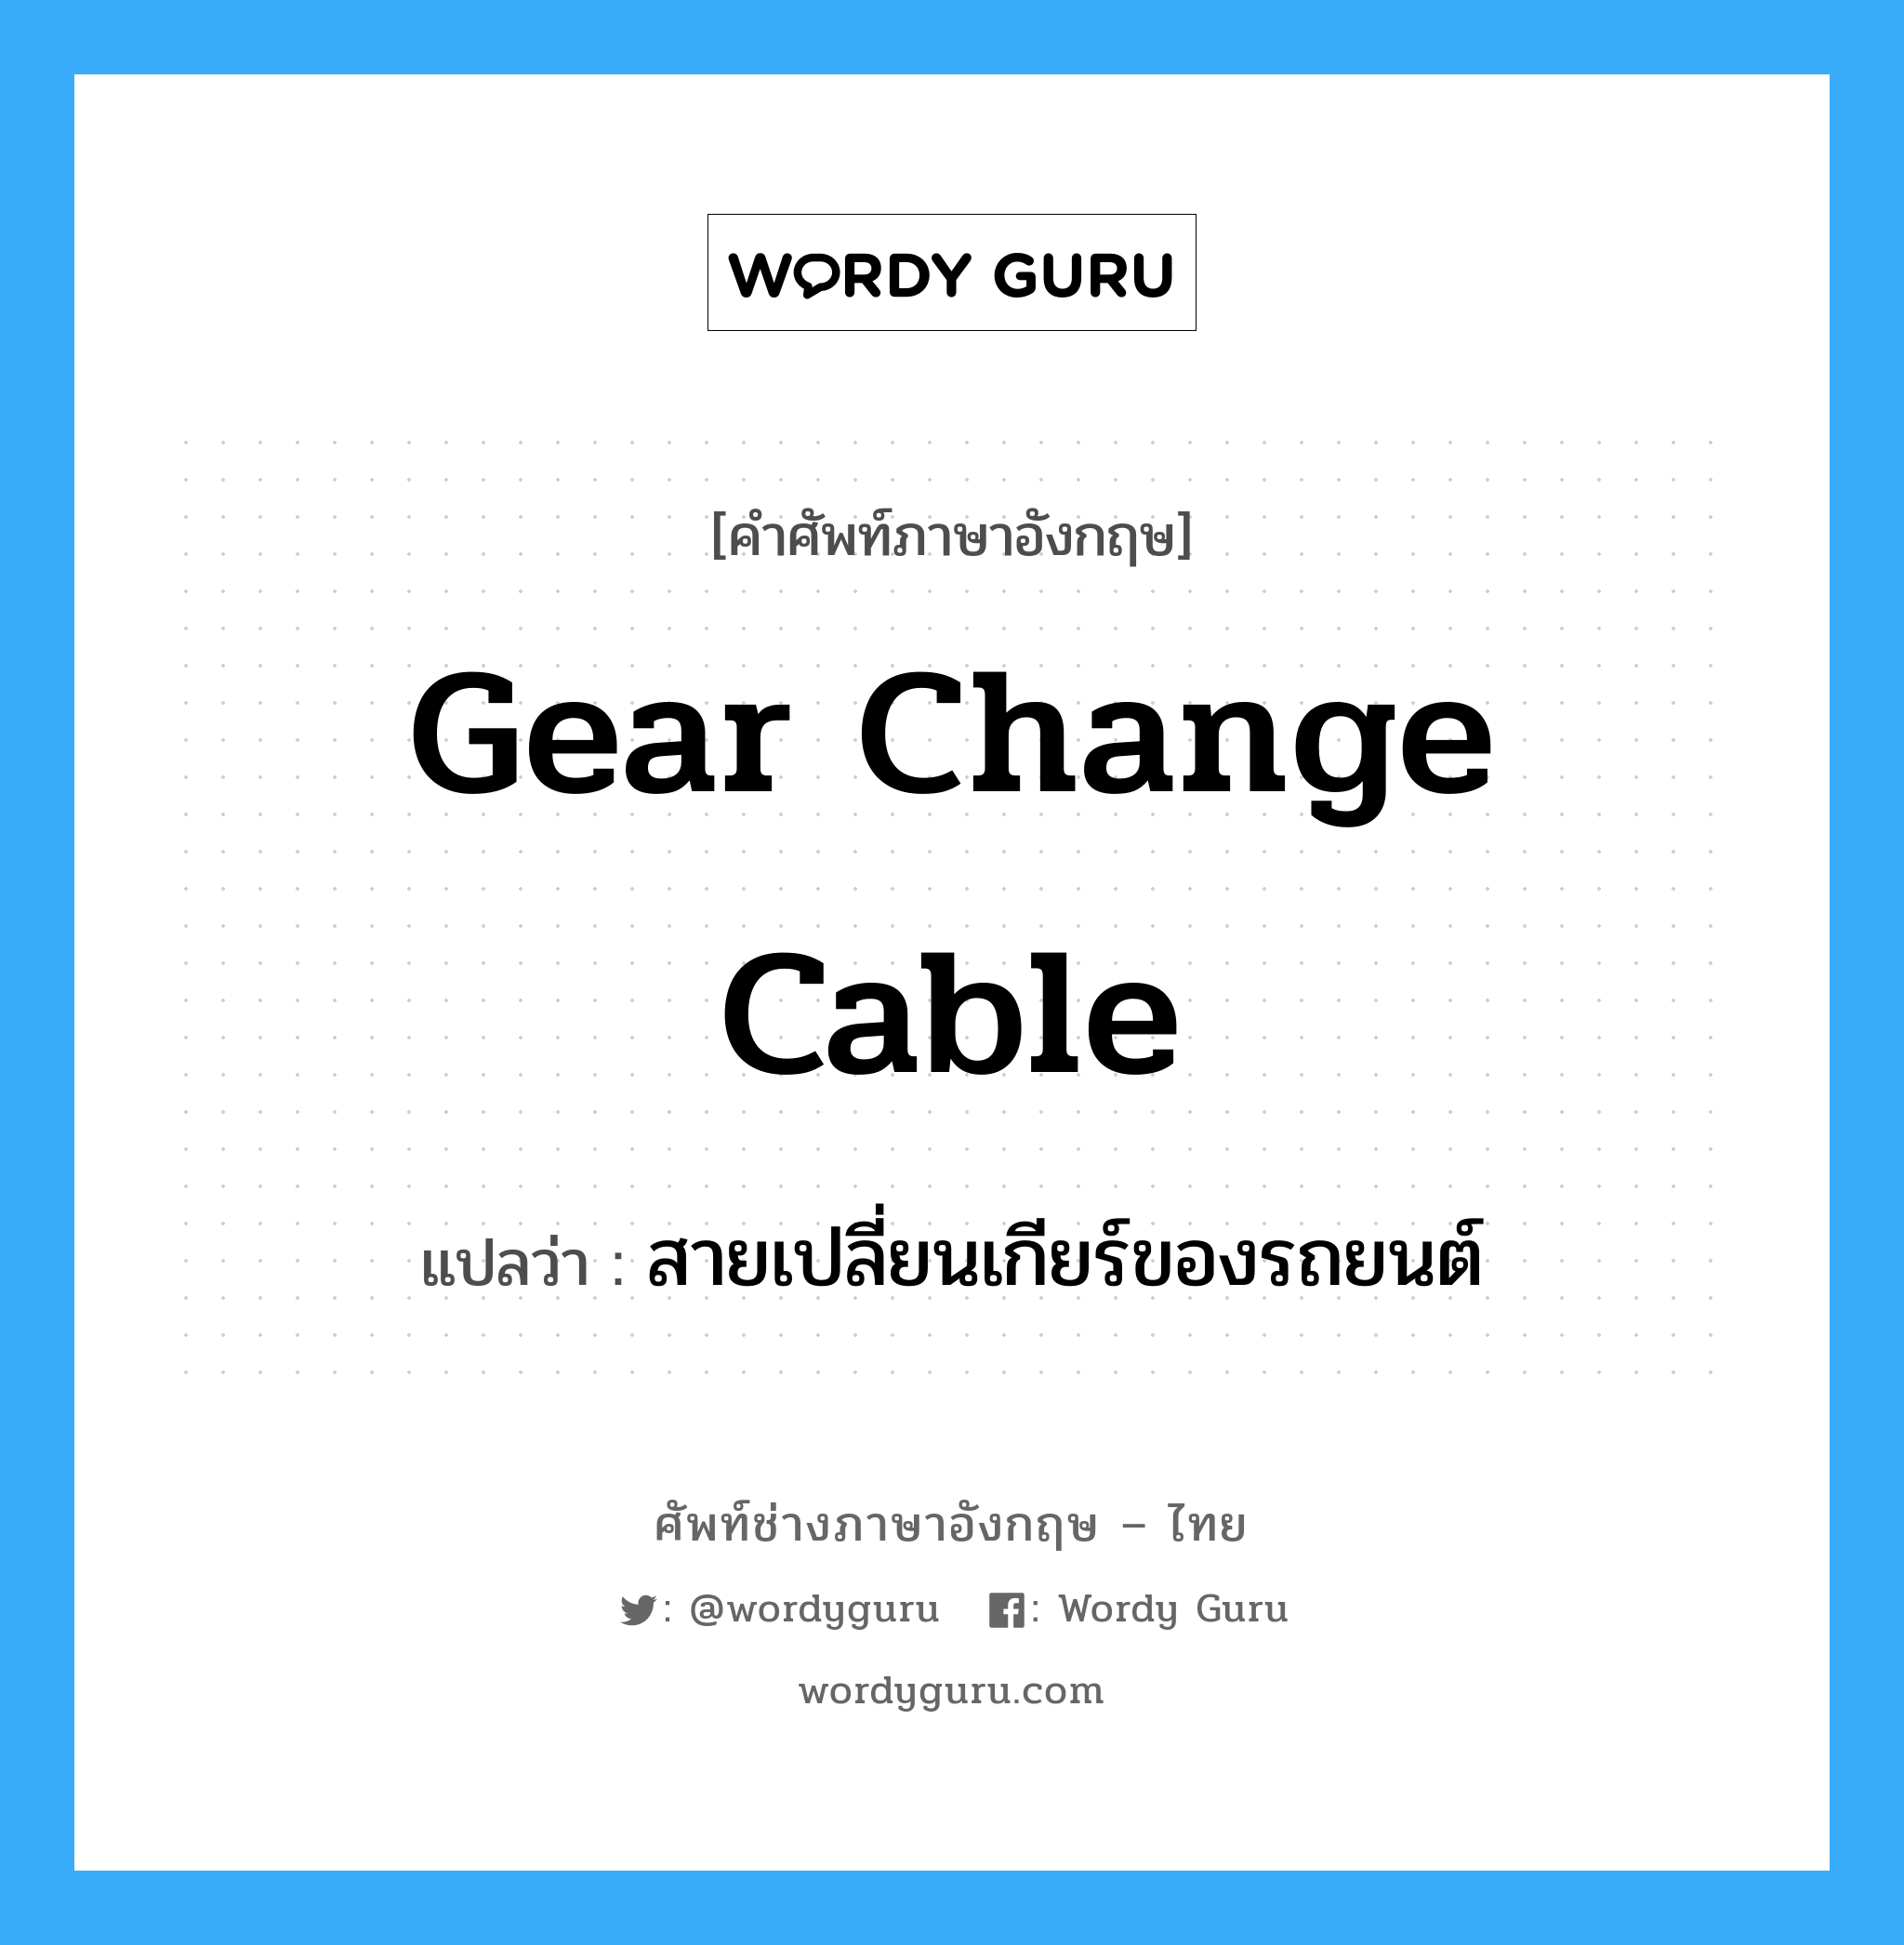 สายเปลี่ยนเกียร์ของรถยนต์ ภาษาอังกฤษ?, คำศัพท์ช่างภาษาอังกฤษ - ไทย สายเปลี่ยนเกียร์ของรถยนต์ คำศัพท์ภาษาอังกฤษ สายเปลี่ยนเกียร์ของรถยนต์ แปลว่า gear change cable